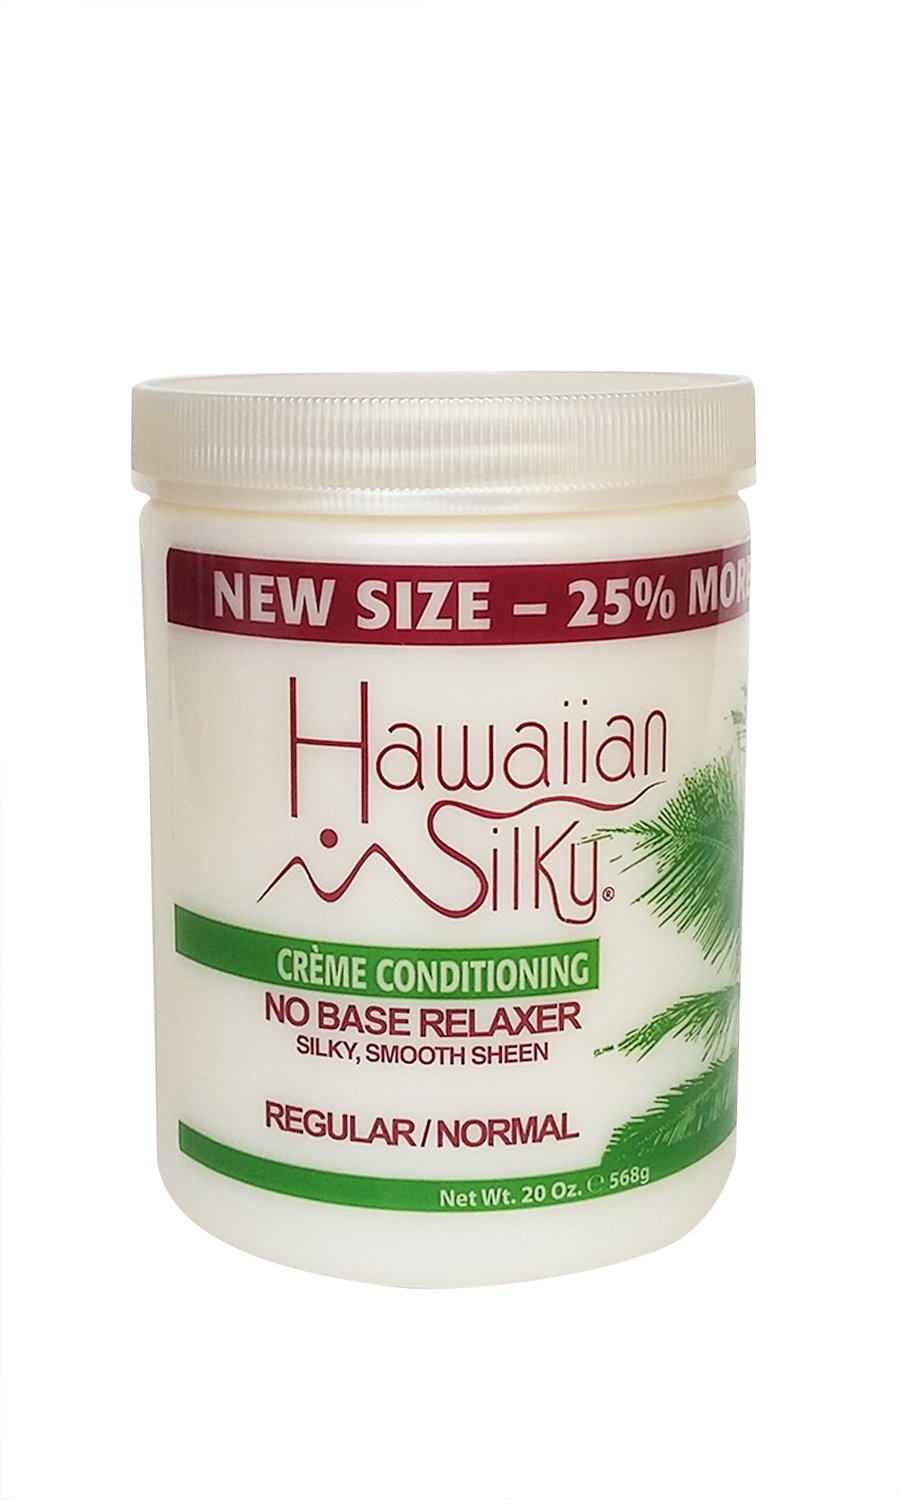 Hawaiian Silky Crème Conditioning No Base Relaxer, Regular, 20oz